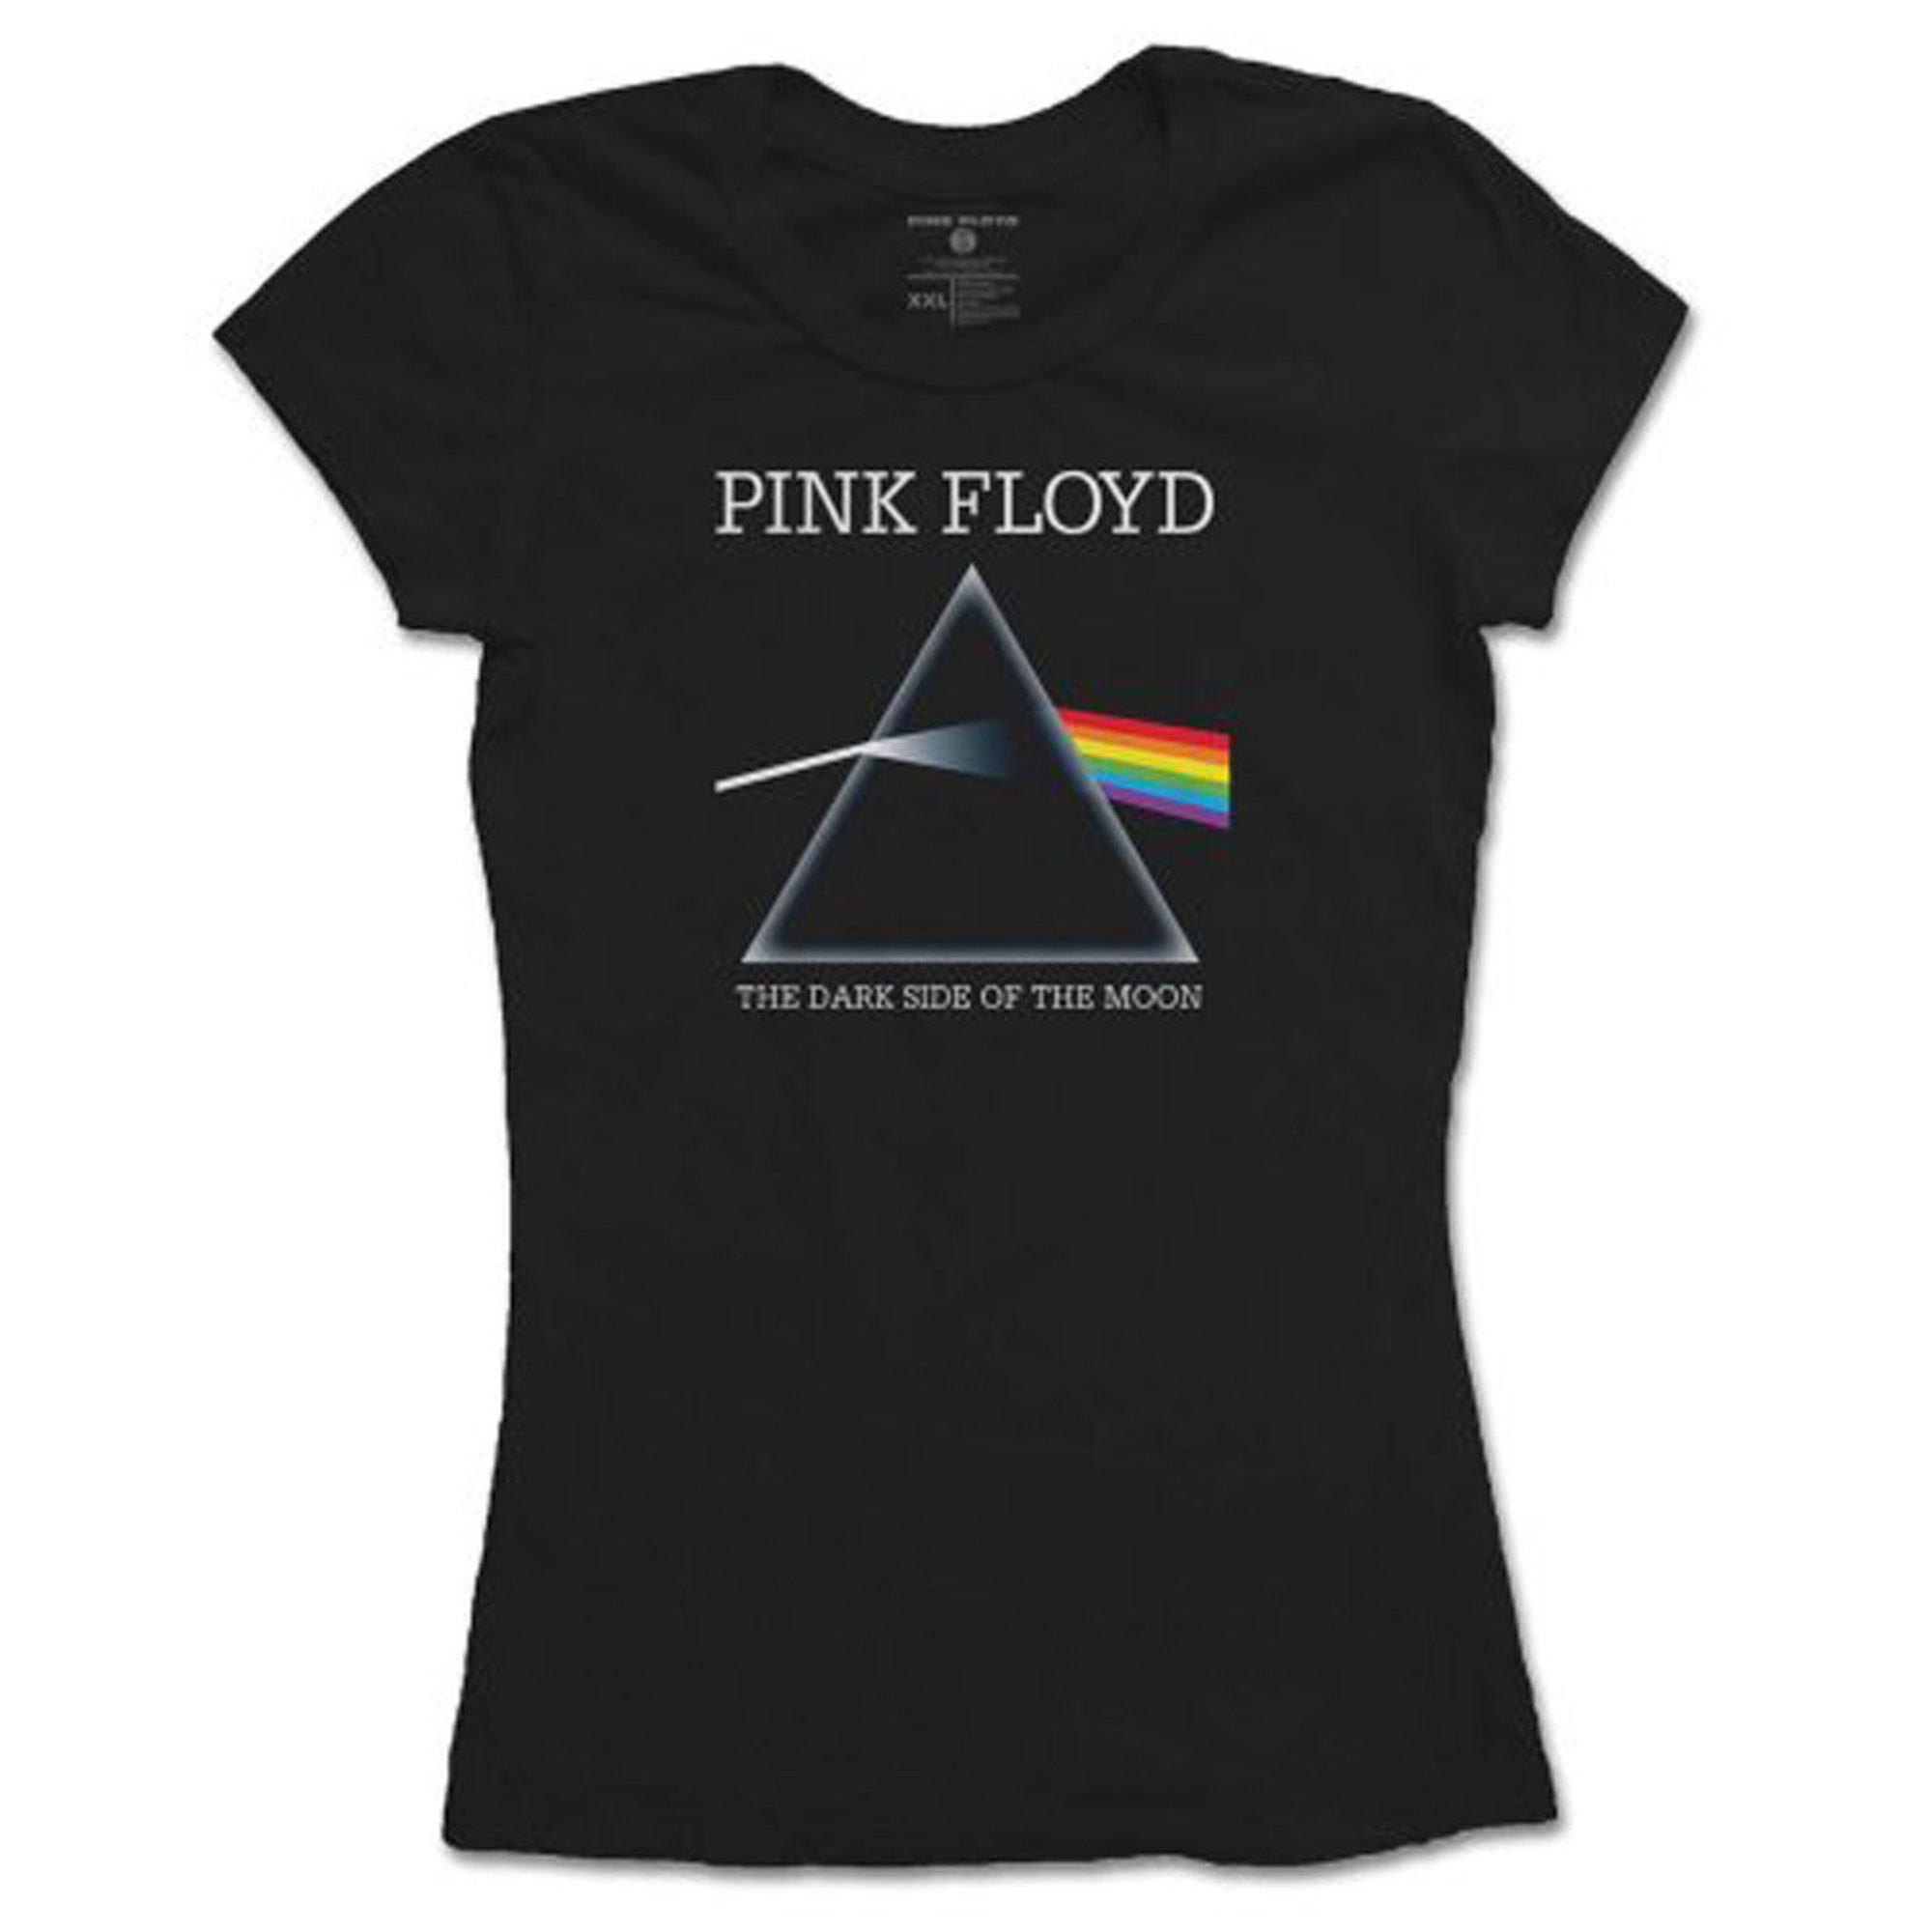 Ladies Pink Floyd Dark Side of the Moon Rock Tee T-Shirt